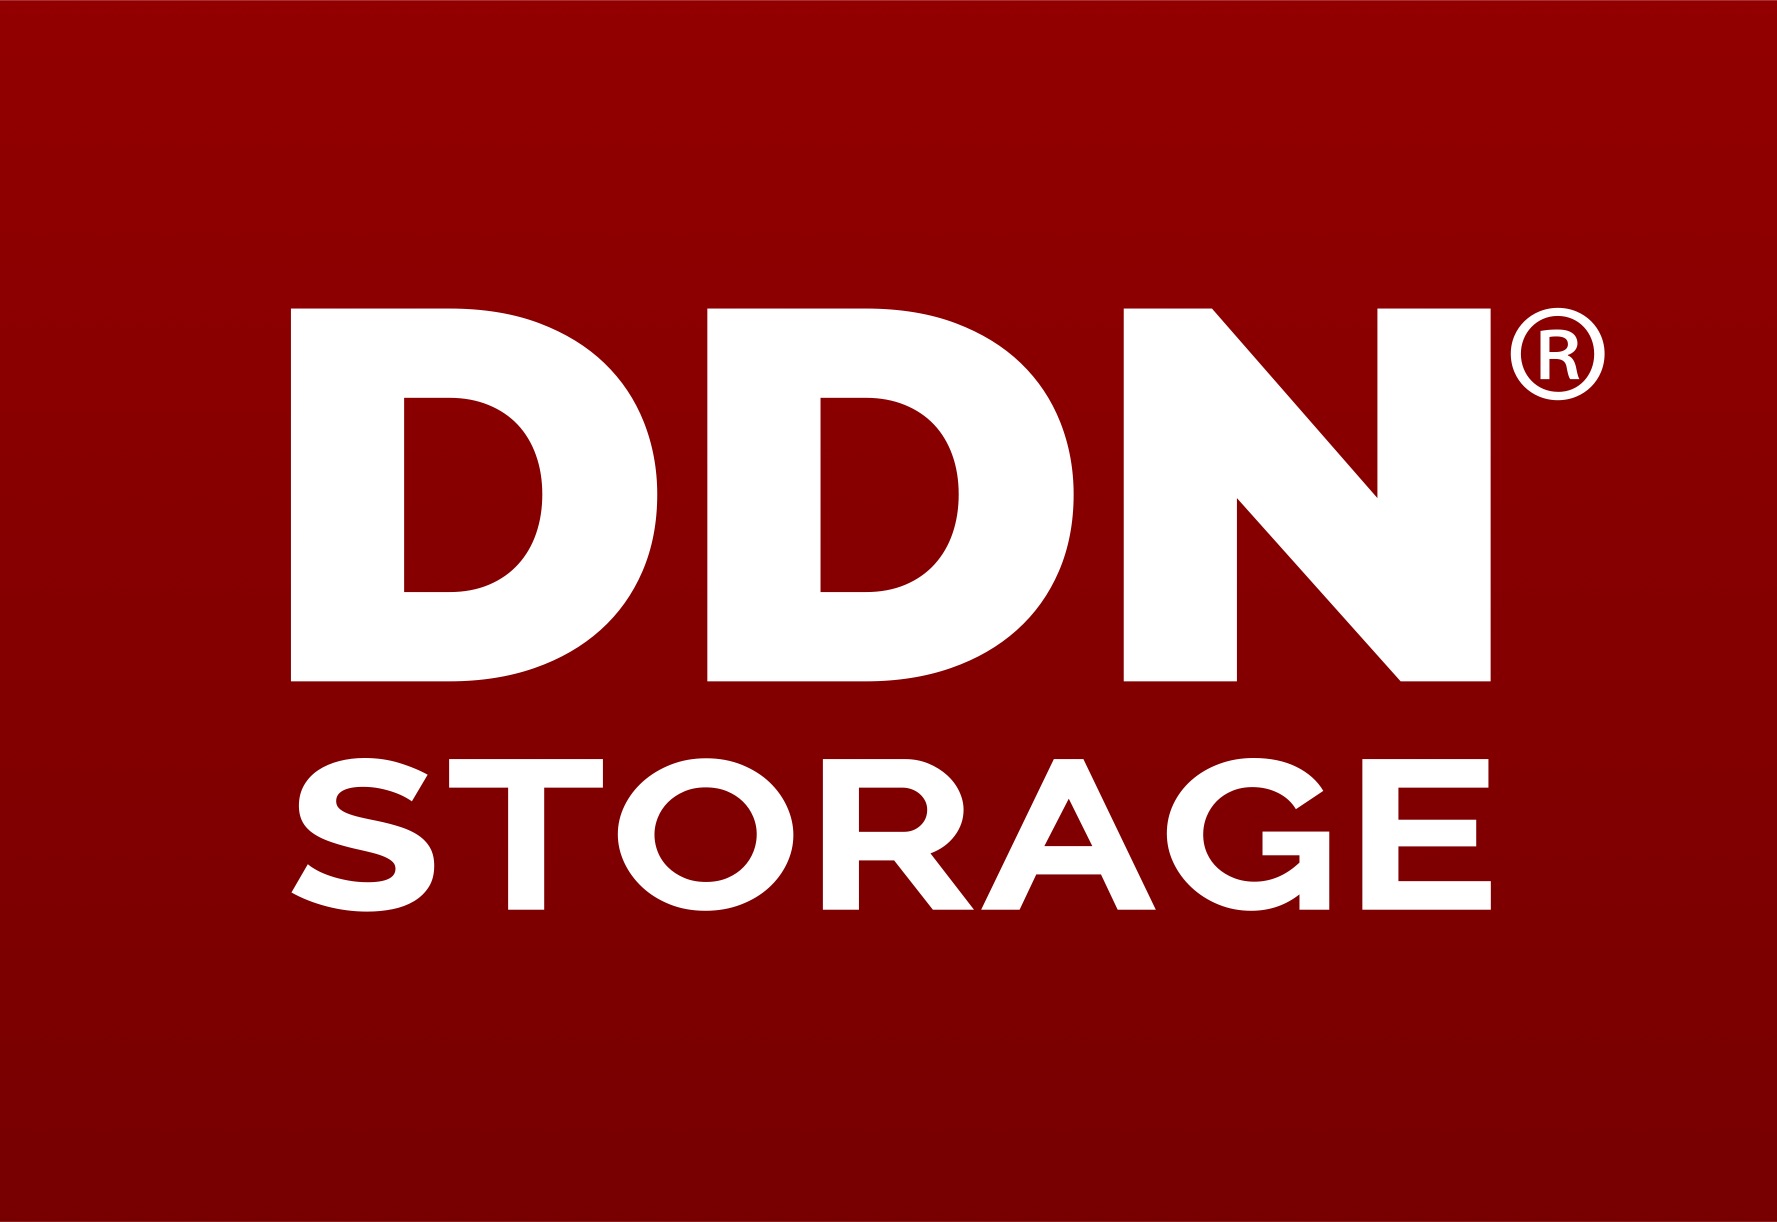 Go to DDN Storage